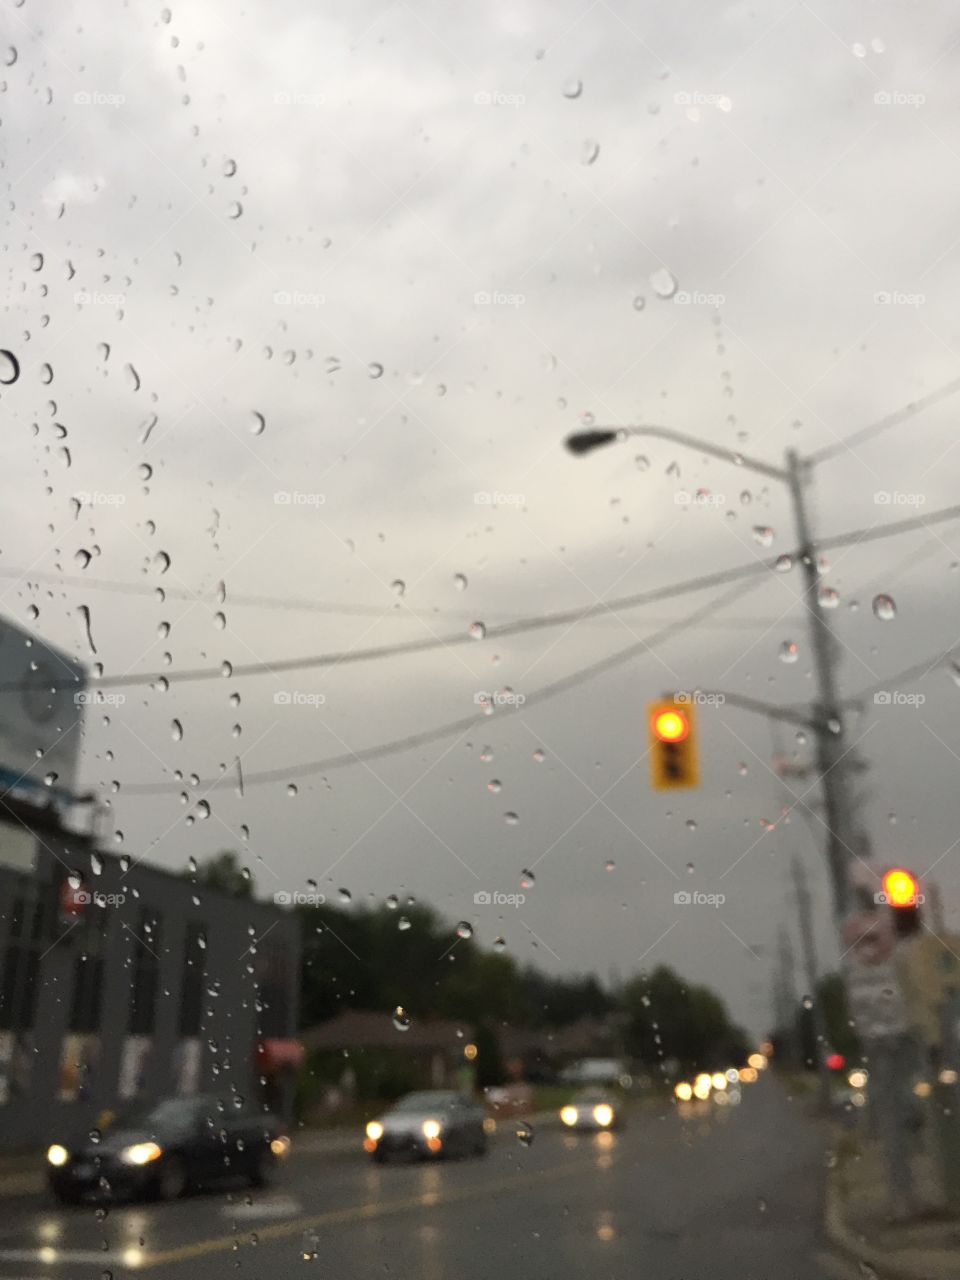 Raining 